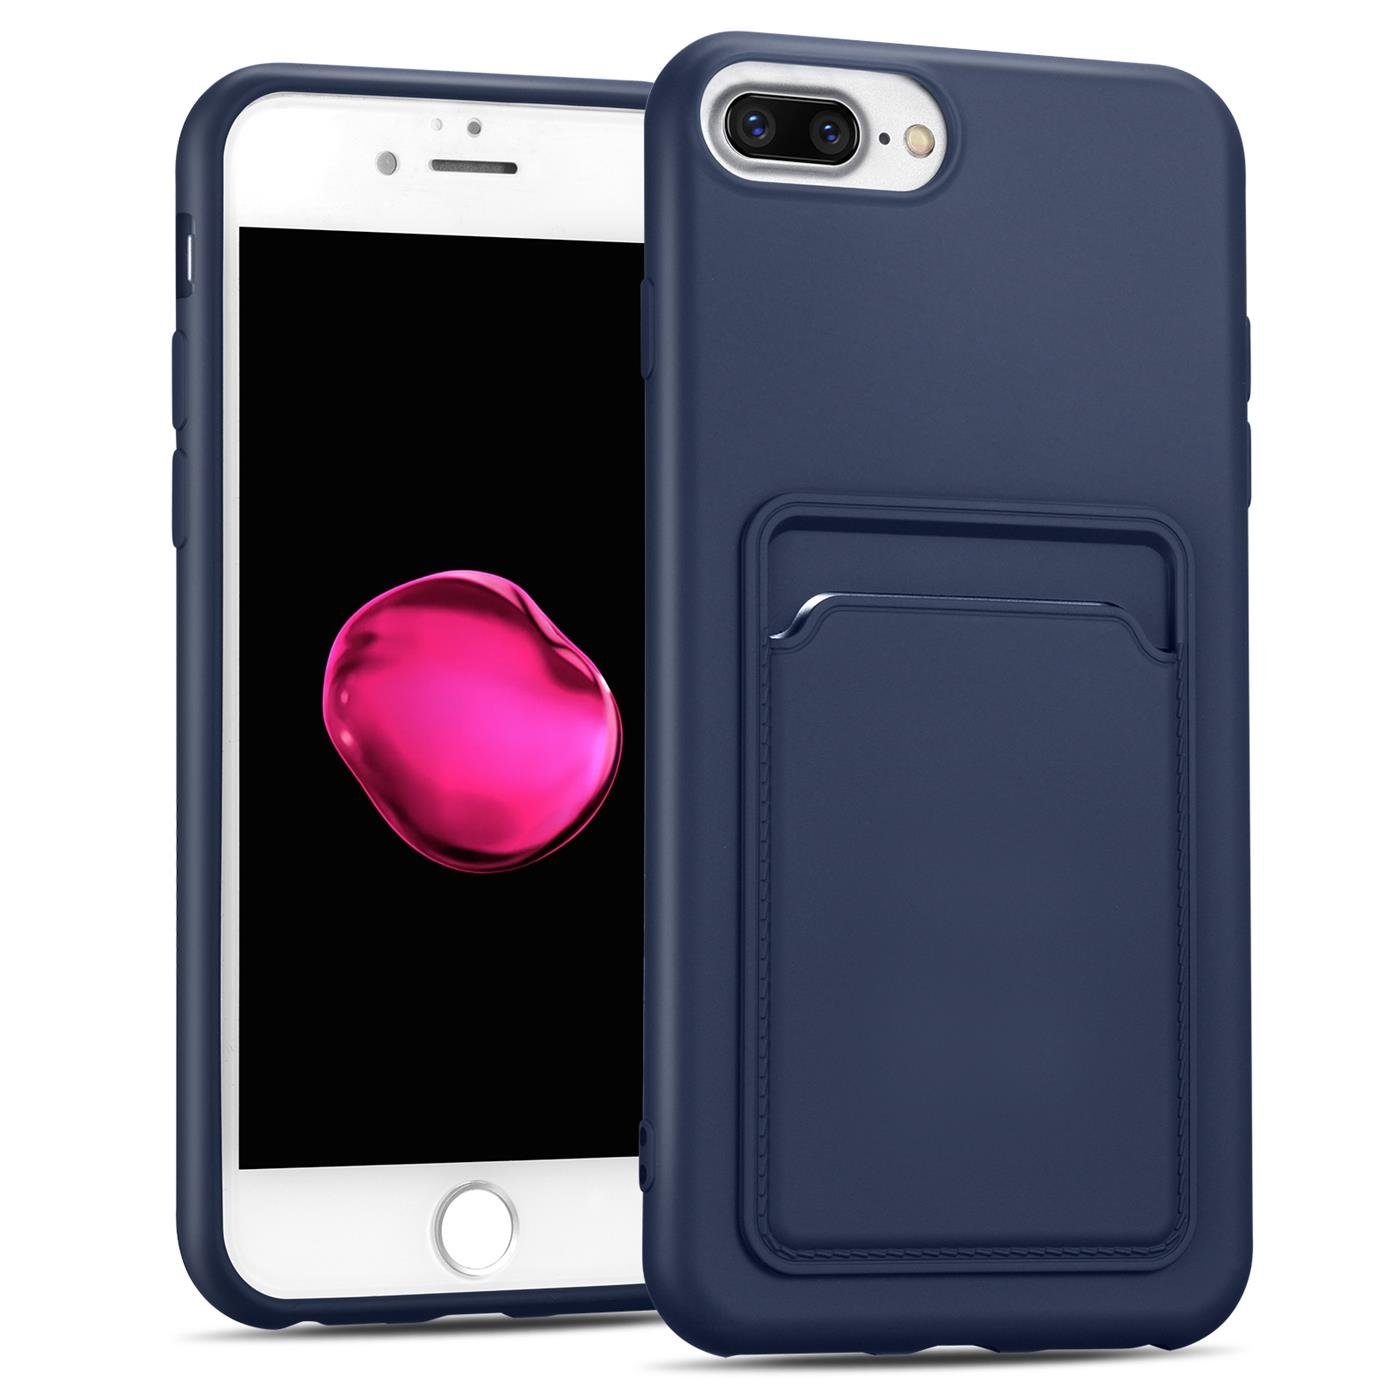 CoolGadget Handyhülle »Card Case Handy Tasche« für Apple iPhone 7 Plus,  iPhone 8 Plus 5,5 Zoll, Silikon Hülle mit Kartenfach Schutzhülle für iPhone  7 Plus / 8 Plus Hülle online kaufen | OTTO